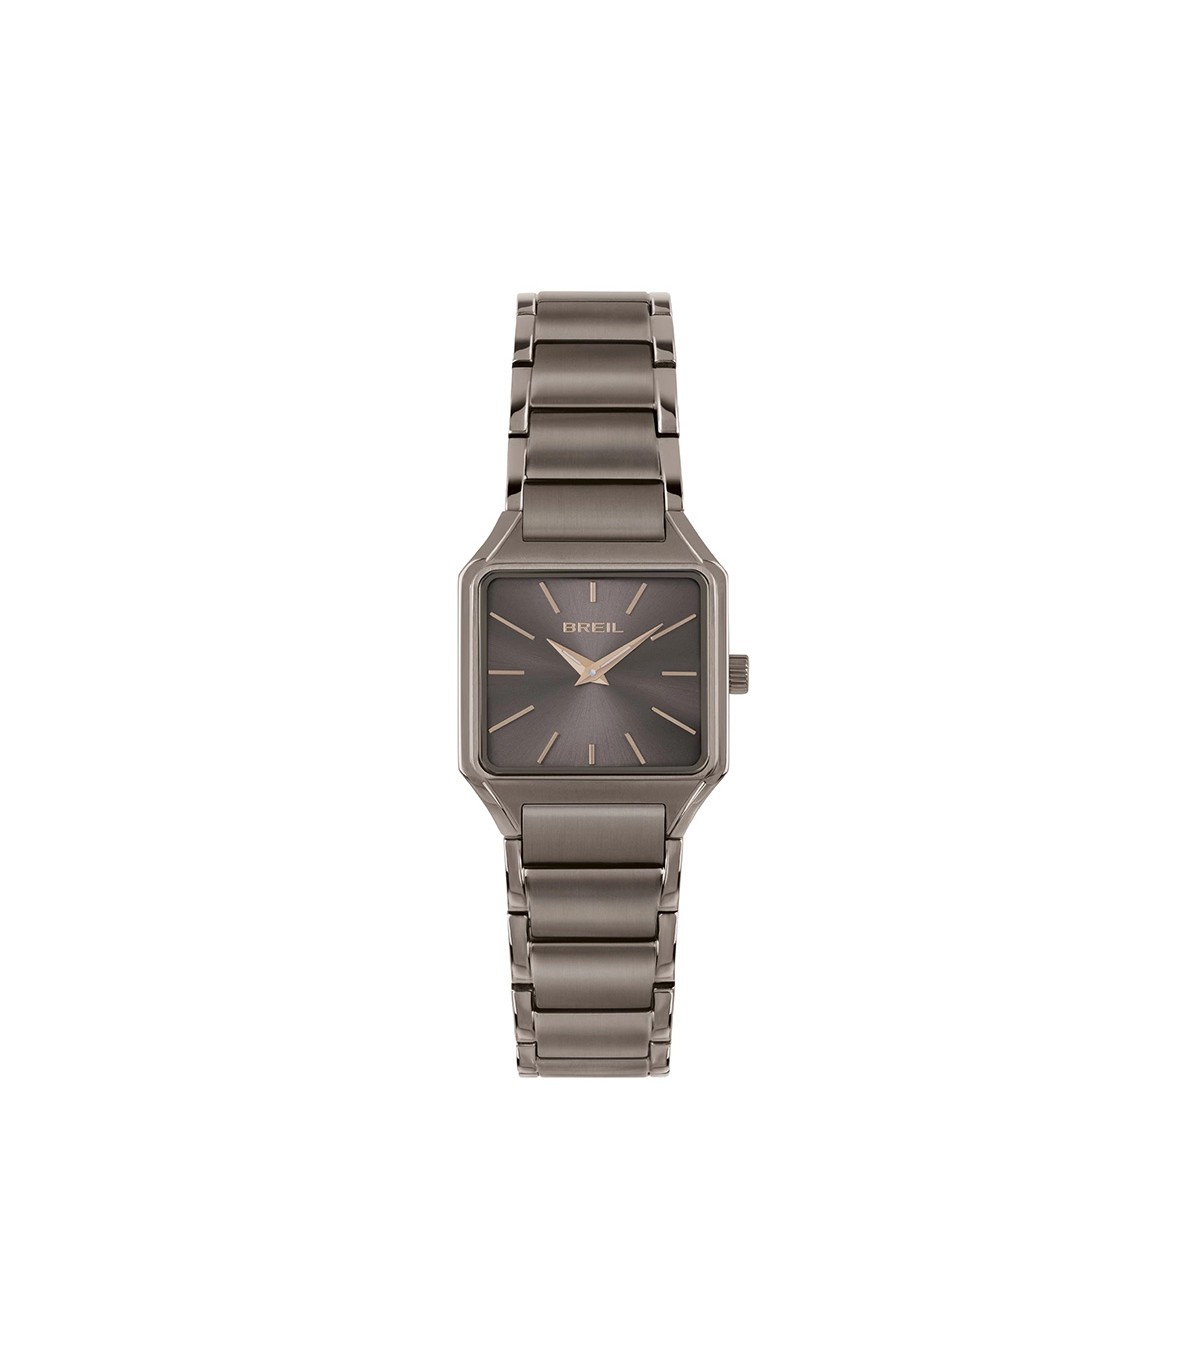 Gucci Women's Swiss G-Timeless Two-Tone Stainless Steel Bracelet Watch 27mm  - Macy's